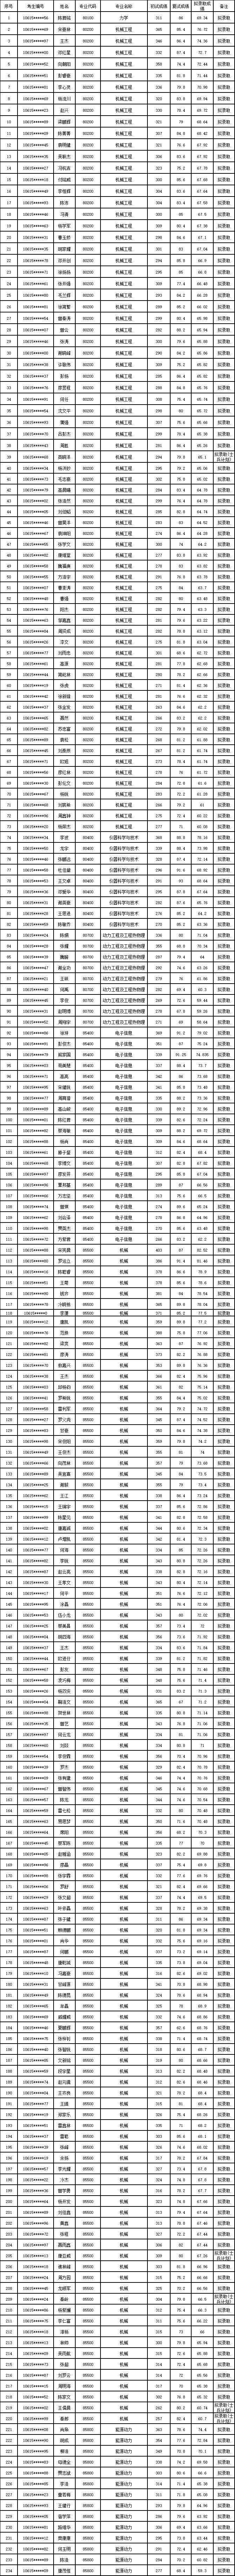 2021考研拟录取名单：四川大学机电工程学院2021年硕士研究生拟录取名单（第一批）